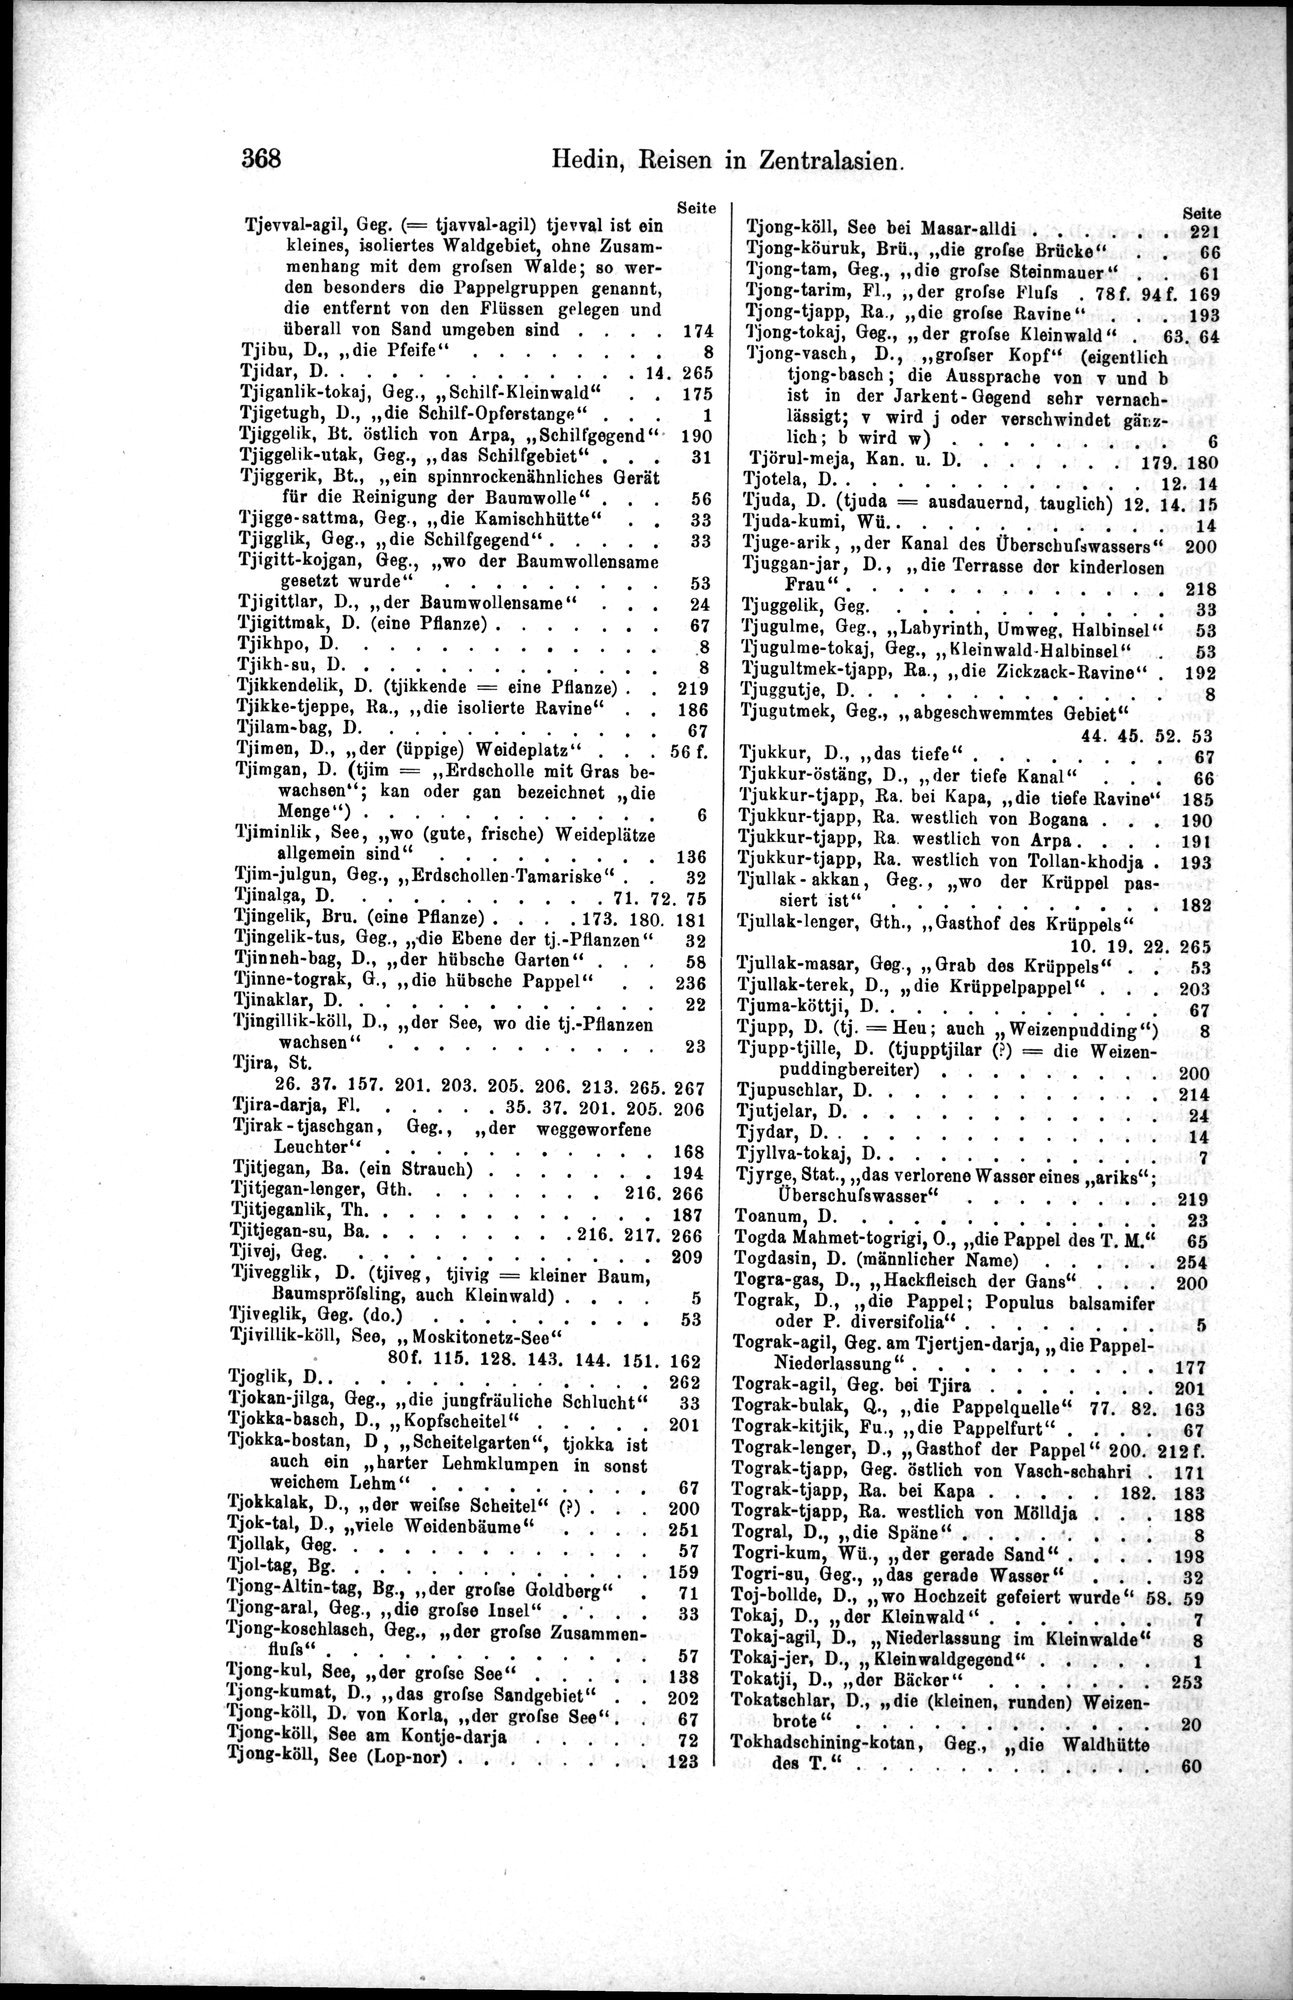 Die Geographische-Wissenschaftlichen Ergebnisse meiner Reisen in Zentralasien, 1894-1897 : vol.1 / Page 380 (Grayscale High Resolution Image)